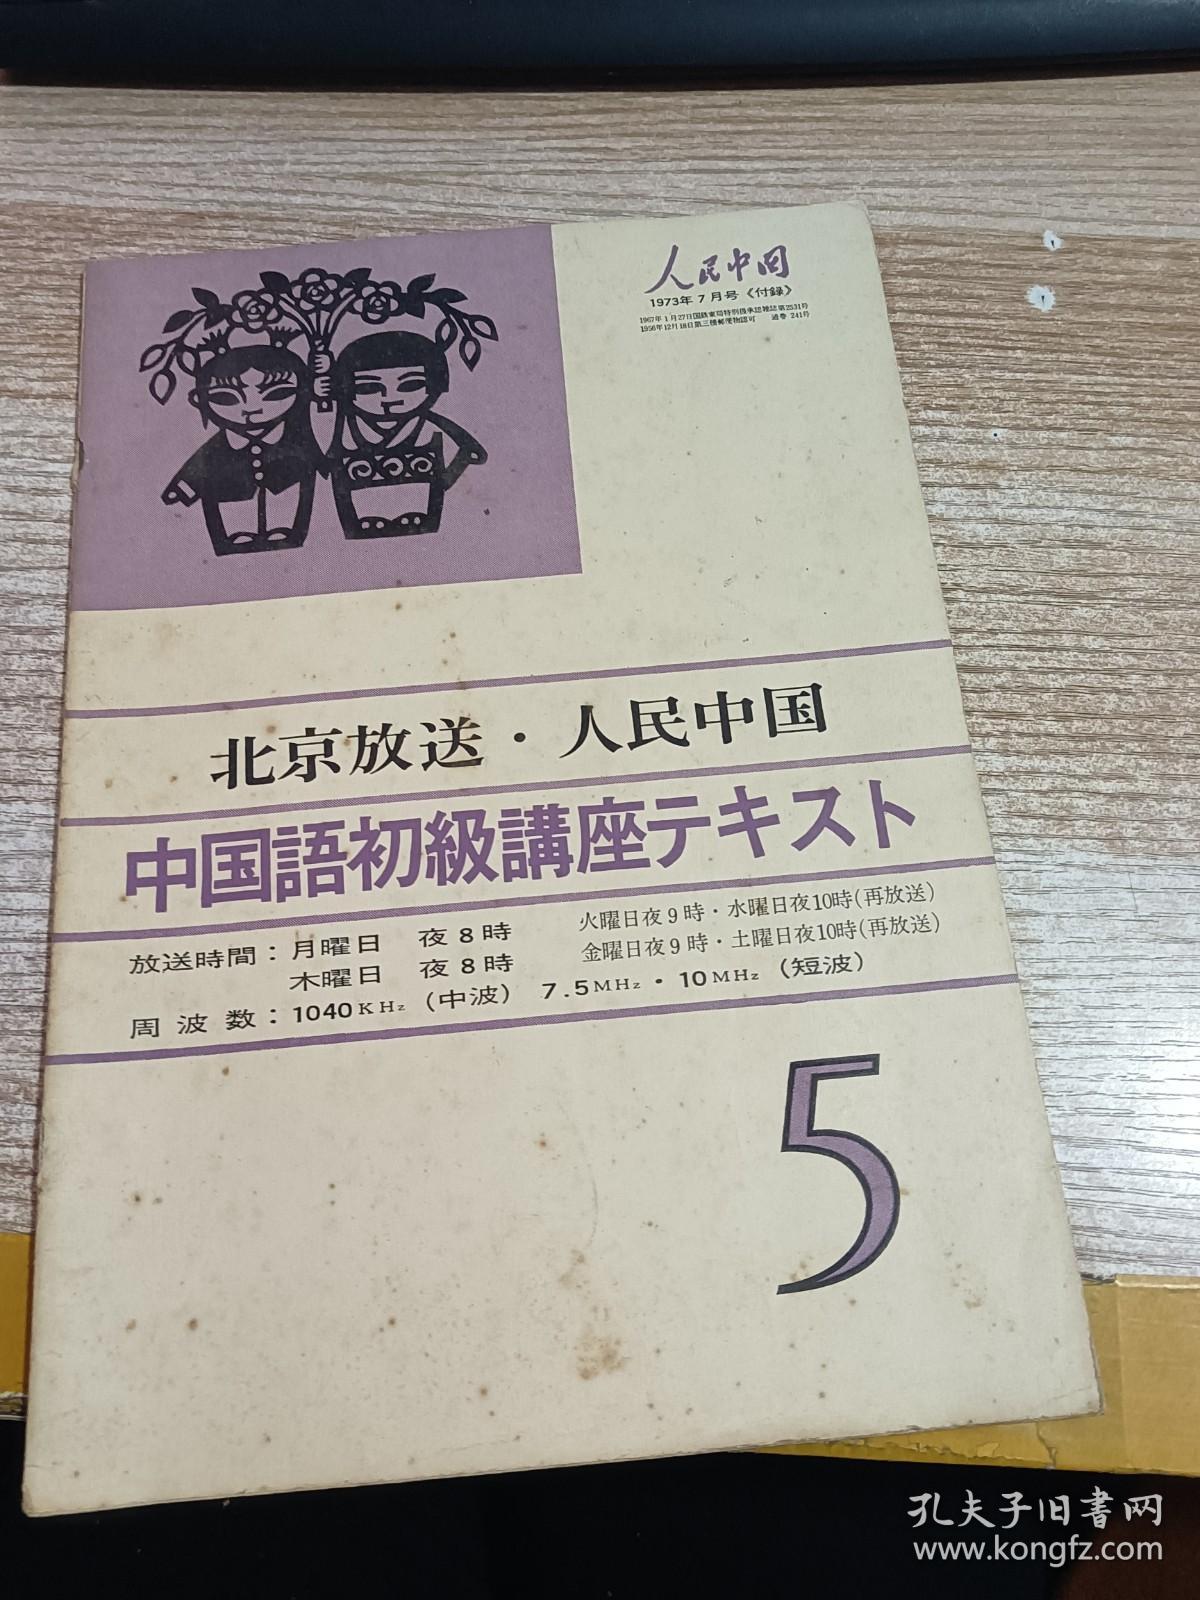 人民中国 1973年7月 付录 北京放送.人民中国 中国语初级讲座 5